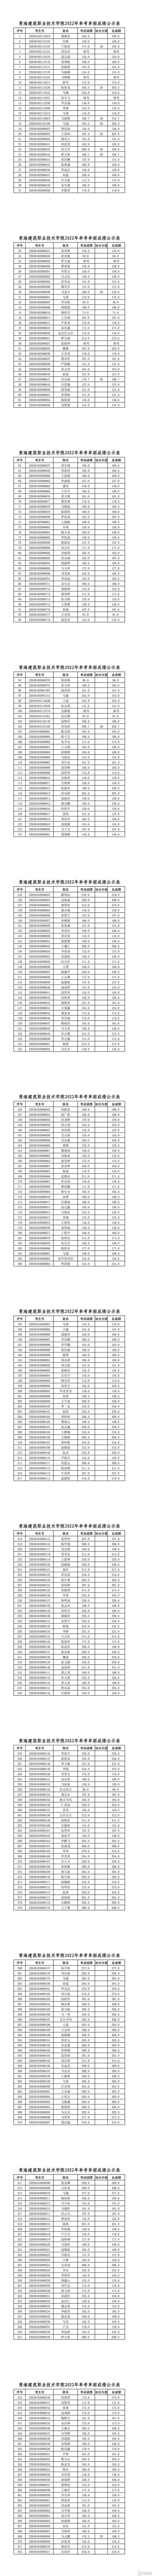 青海建筑职业技术学院2022年单考单招成绩公示表_00.jpg